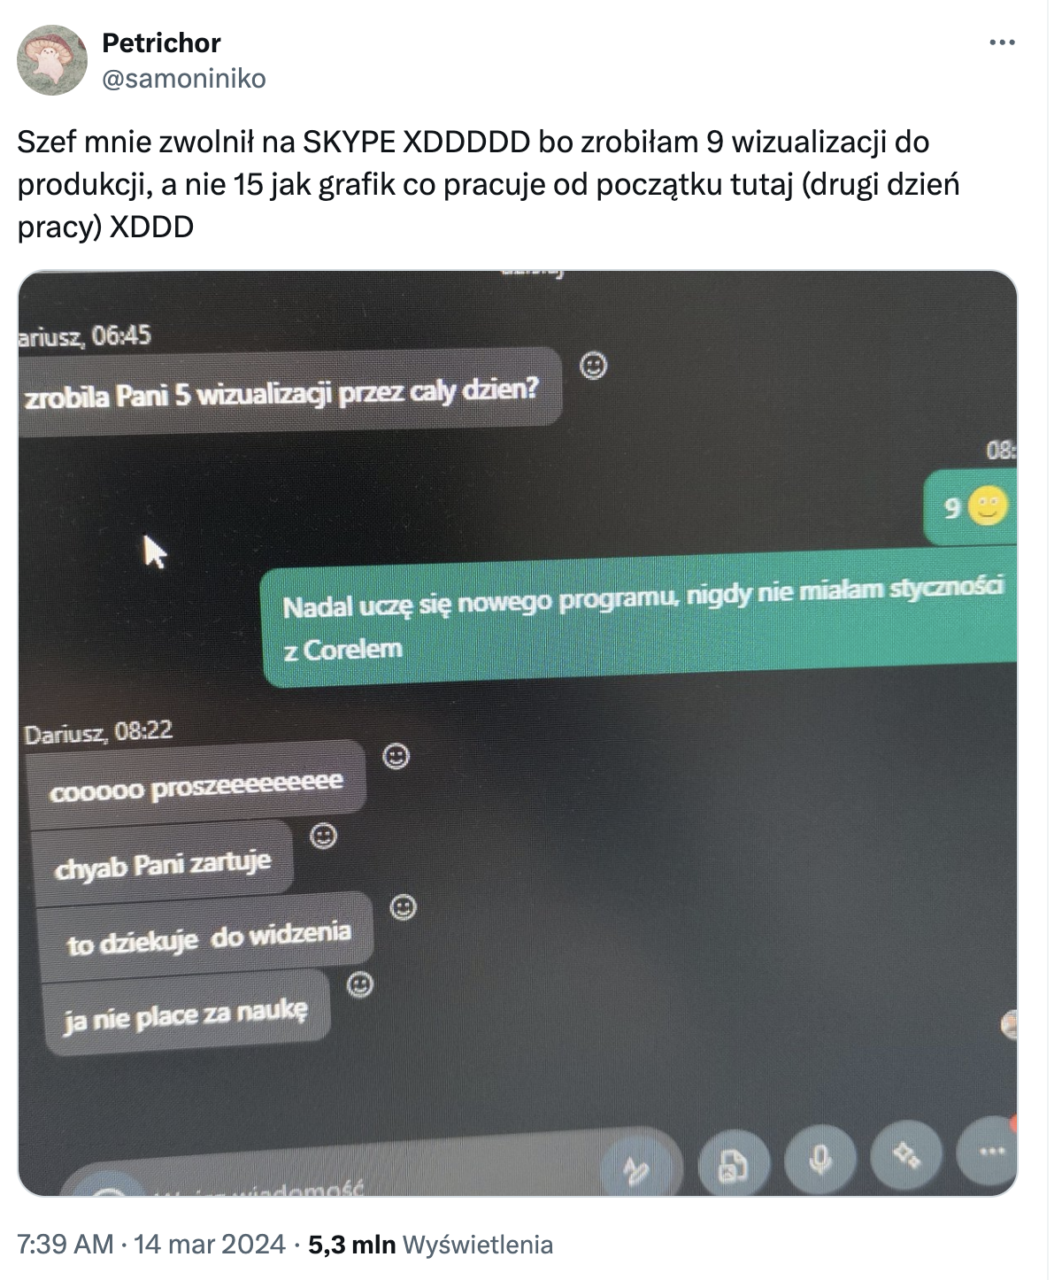 Giftpol. Zrzut ekranu z konwersacji na komunikatorze, z komentarzem użytkownika Twittera o zwolnieniu przez Skype oraz reakcjami innej osoby. W tle widać komputerowy interfejs programu graficznego.